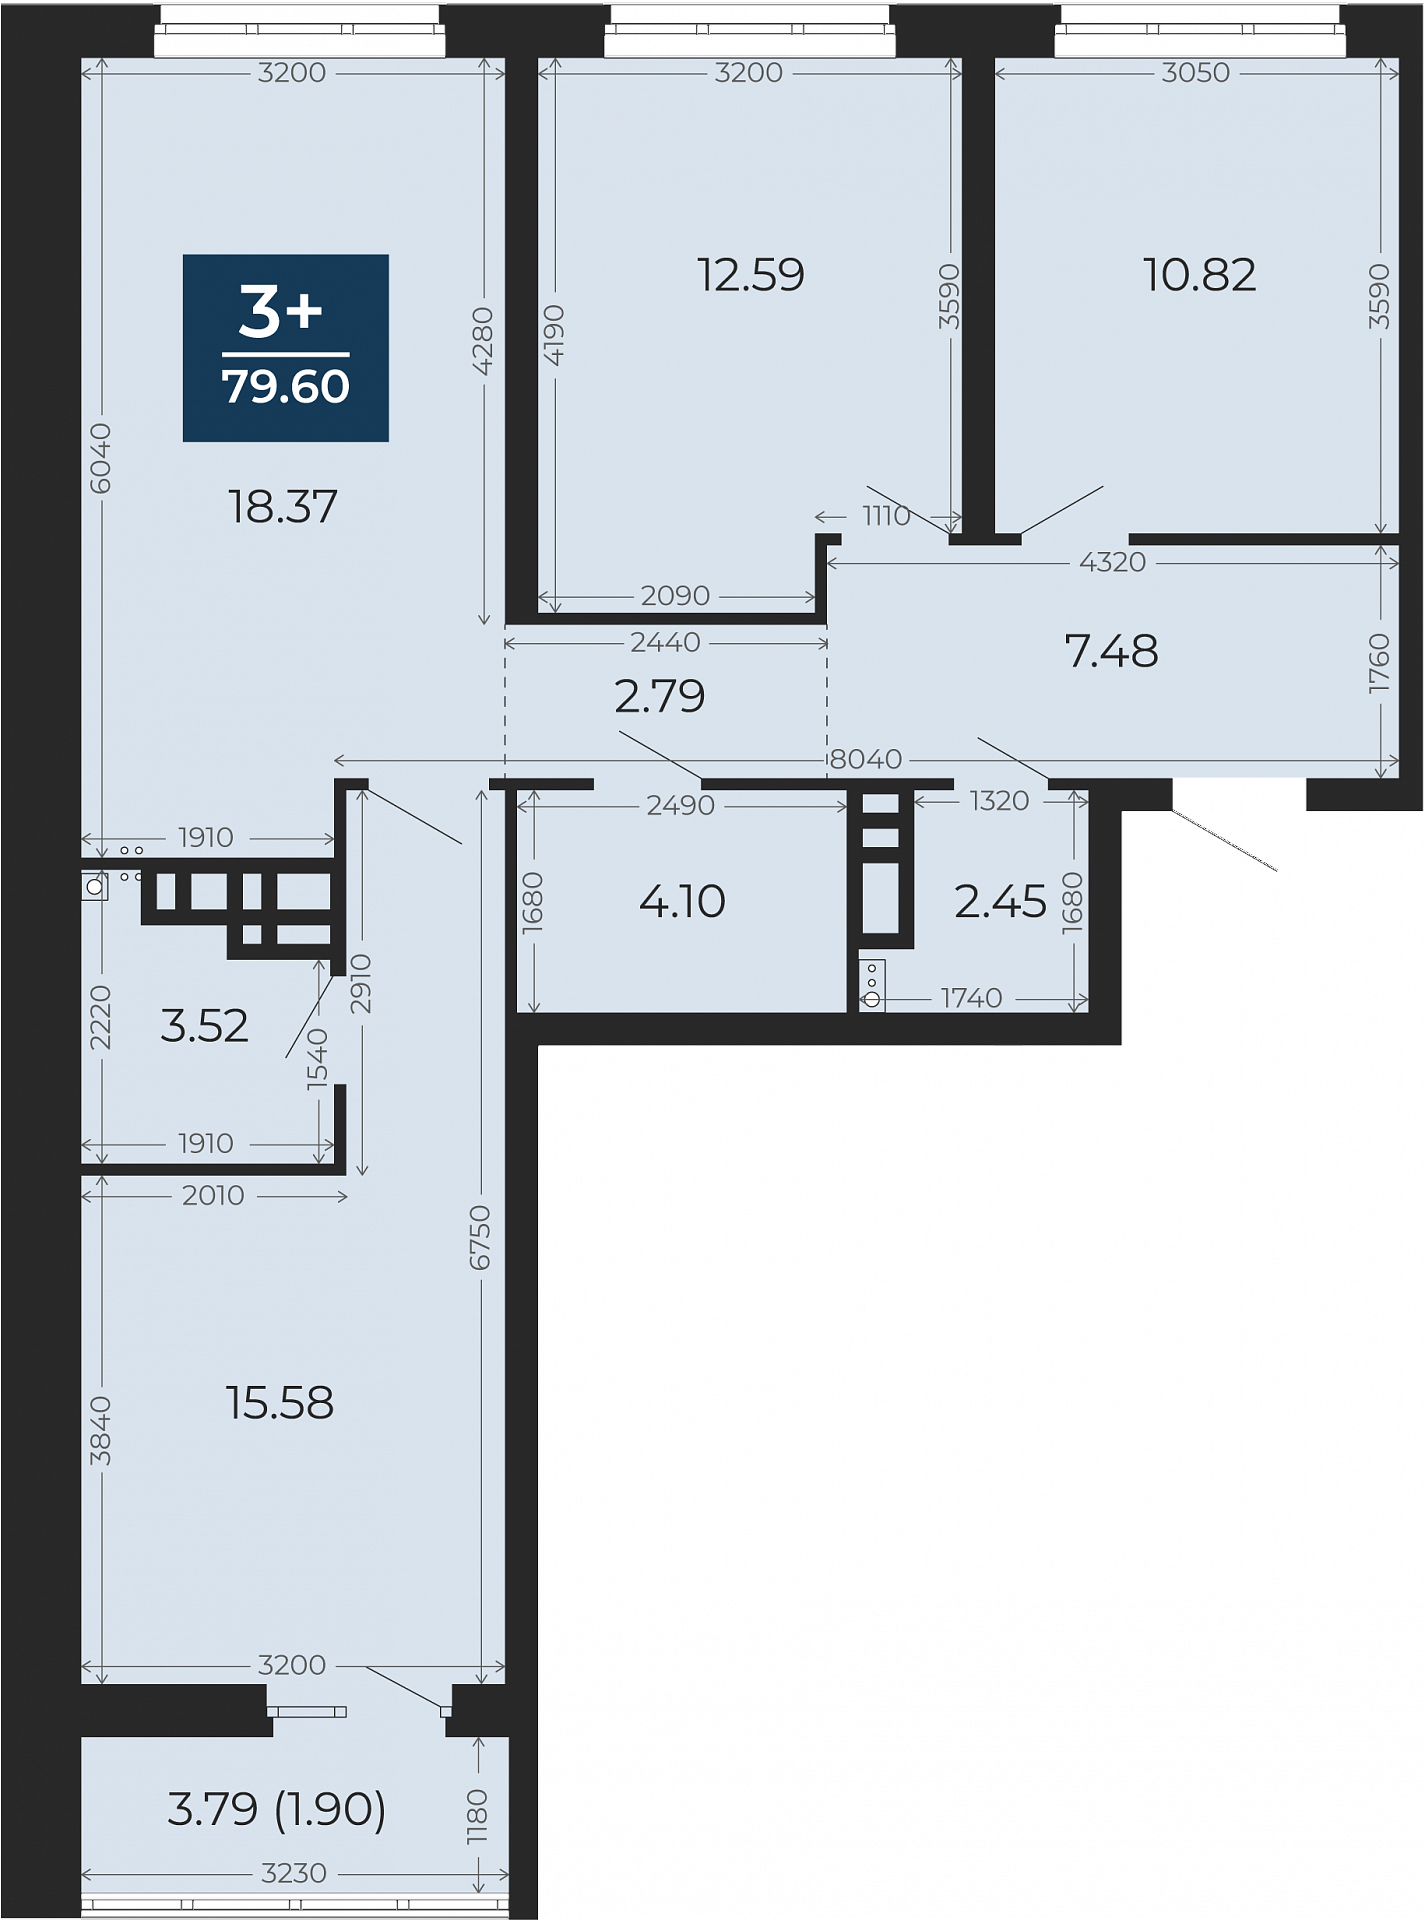 Квартира № 204, 3-комнатная, 79.6 кв. м, 12 этаж